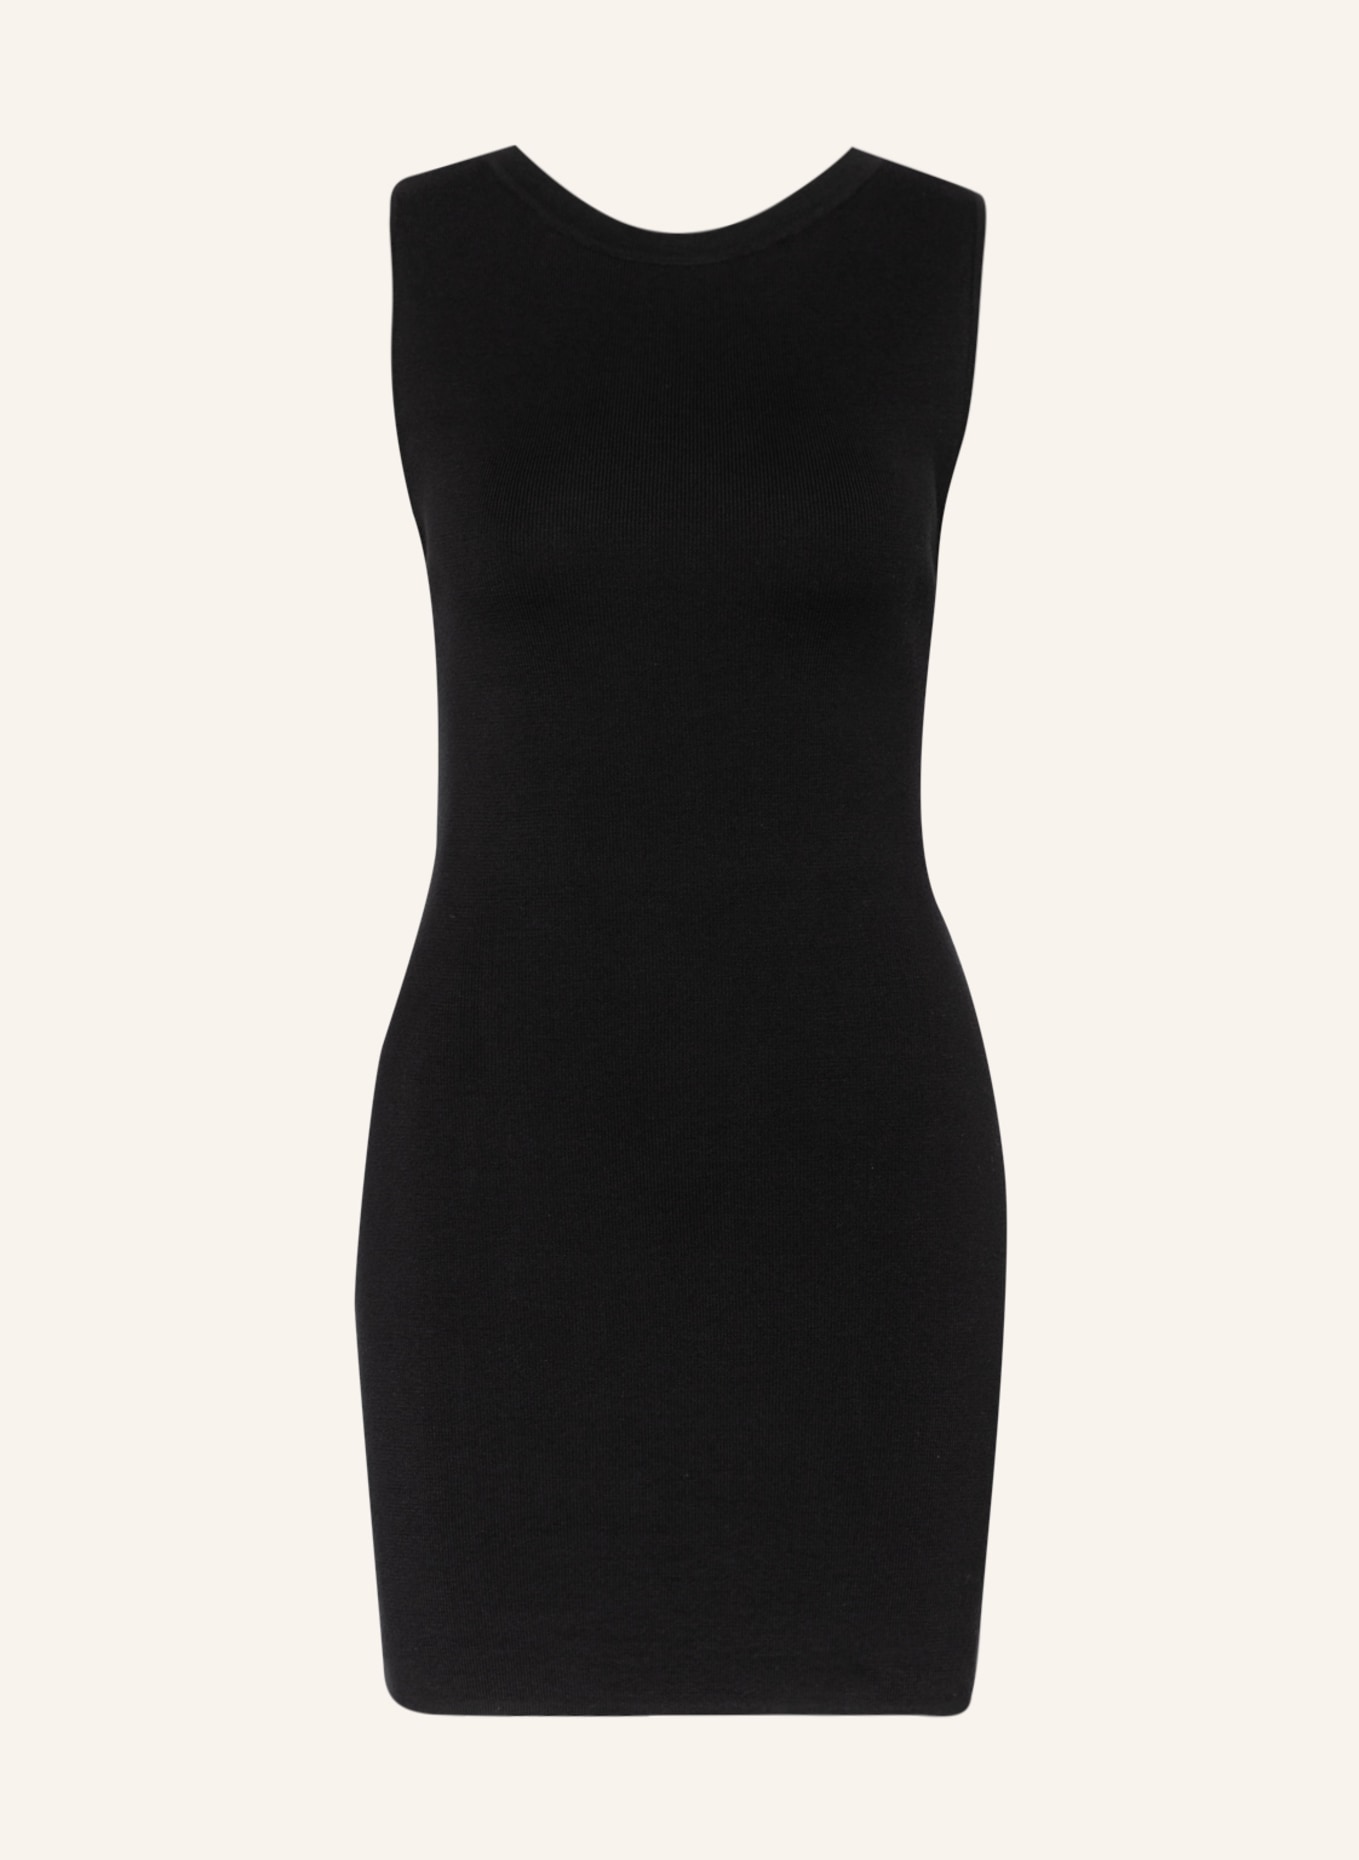 ENVELOPE 1976 Dress BARCA, Color: BLACK (Image 1)